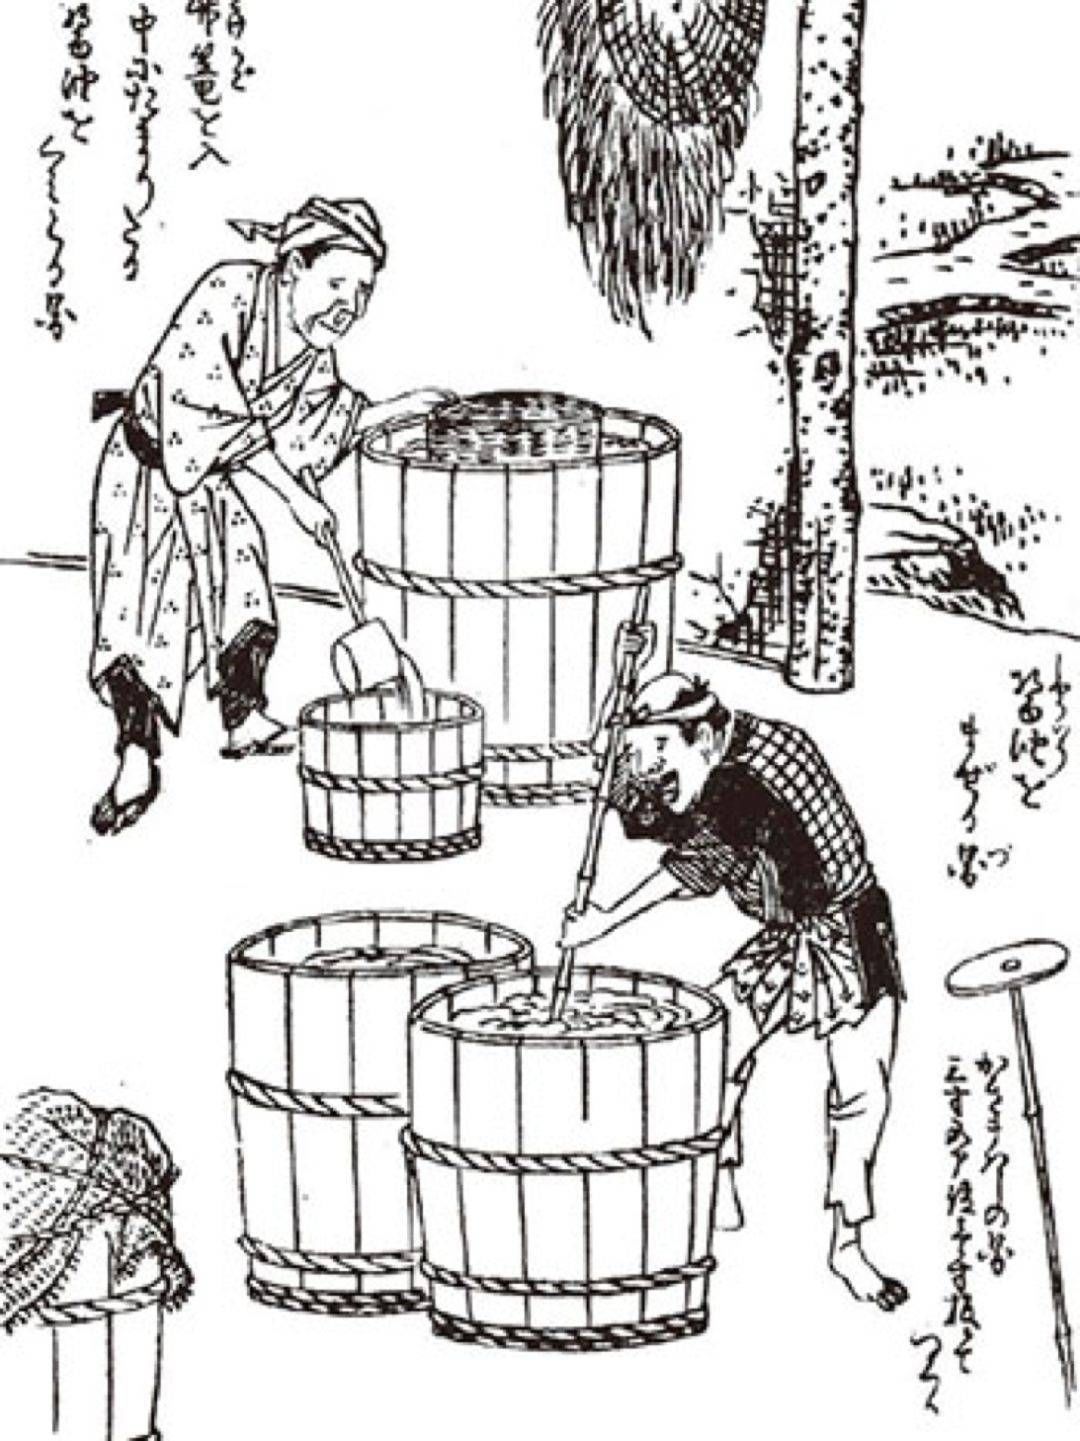 酱油在日本的消费升级之路,对中国有何启示?